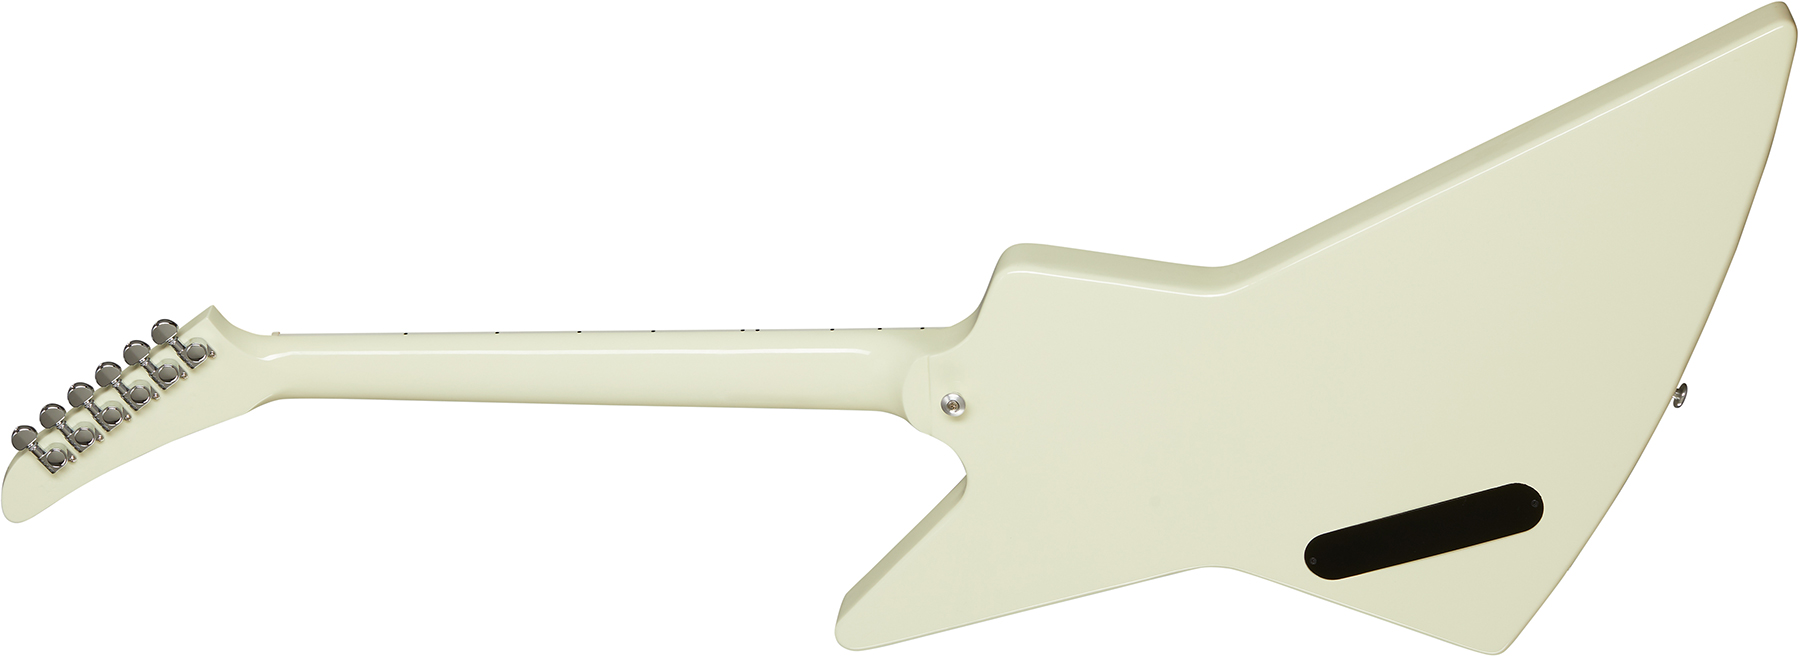 Gibson Explorer 70s Original 2h Ht Rw - Classic White - Retro-Rock-E-Gitarre - Variation 1